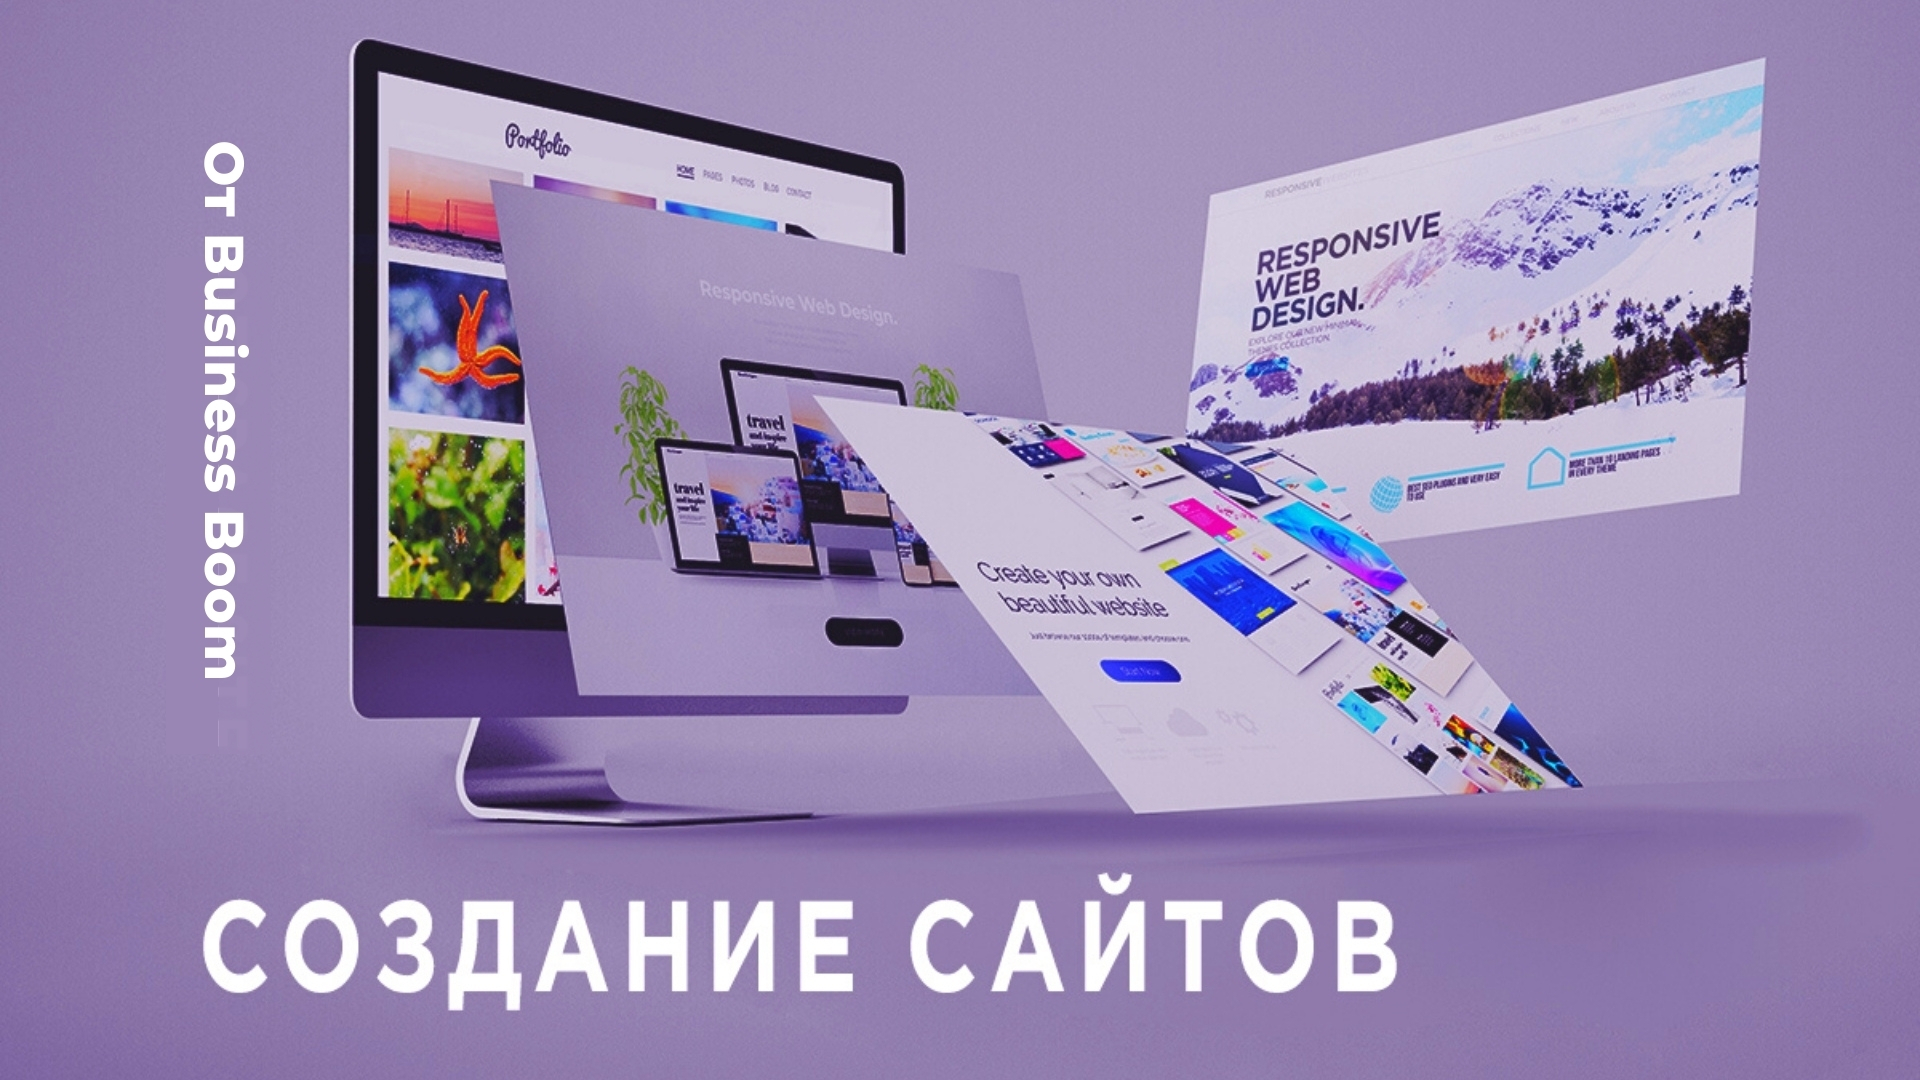 Разработка веб сайтов в москве. Разработка сайтов. Разработка сайтов Москва. Как создать веб сайт. Создание сайтов Москва компания.